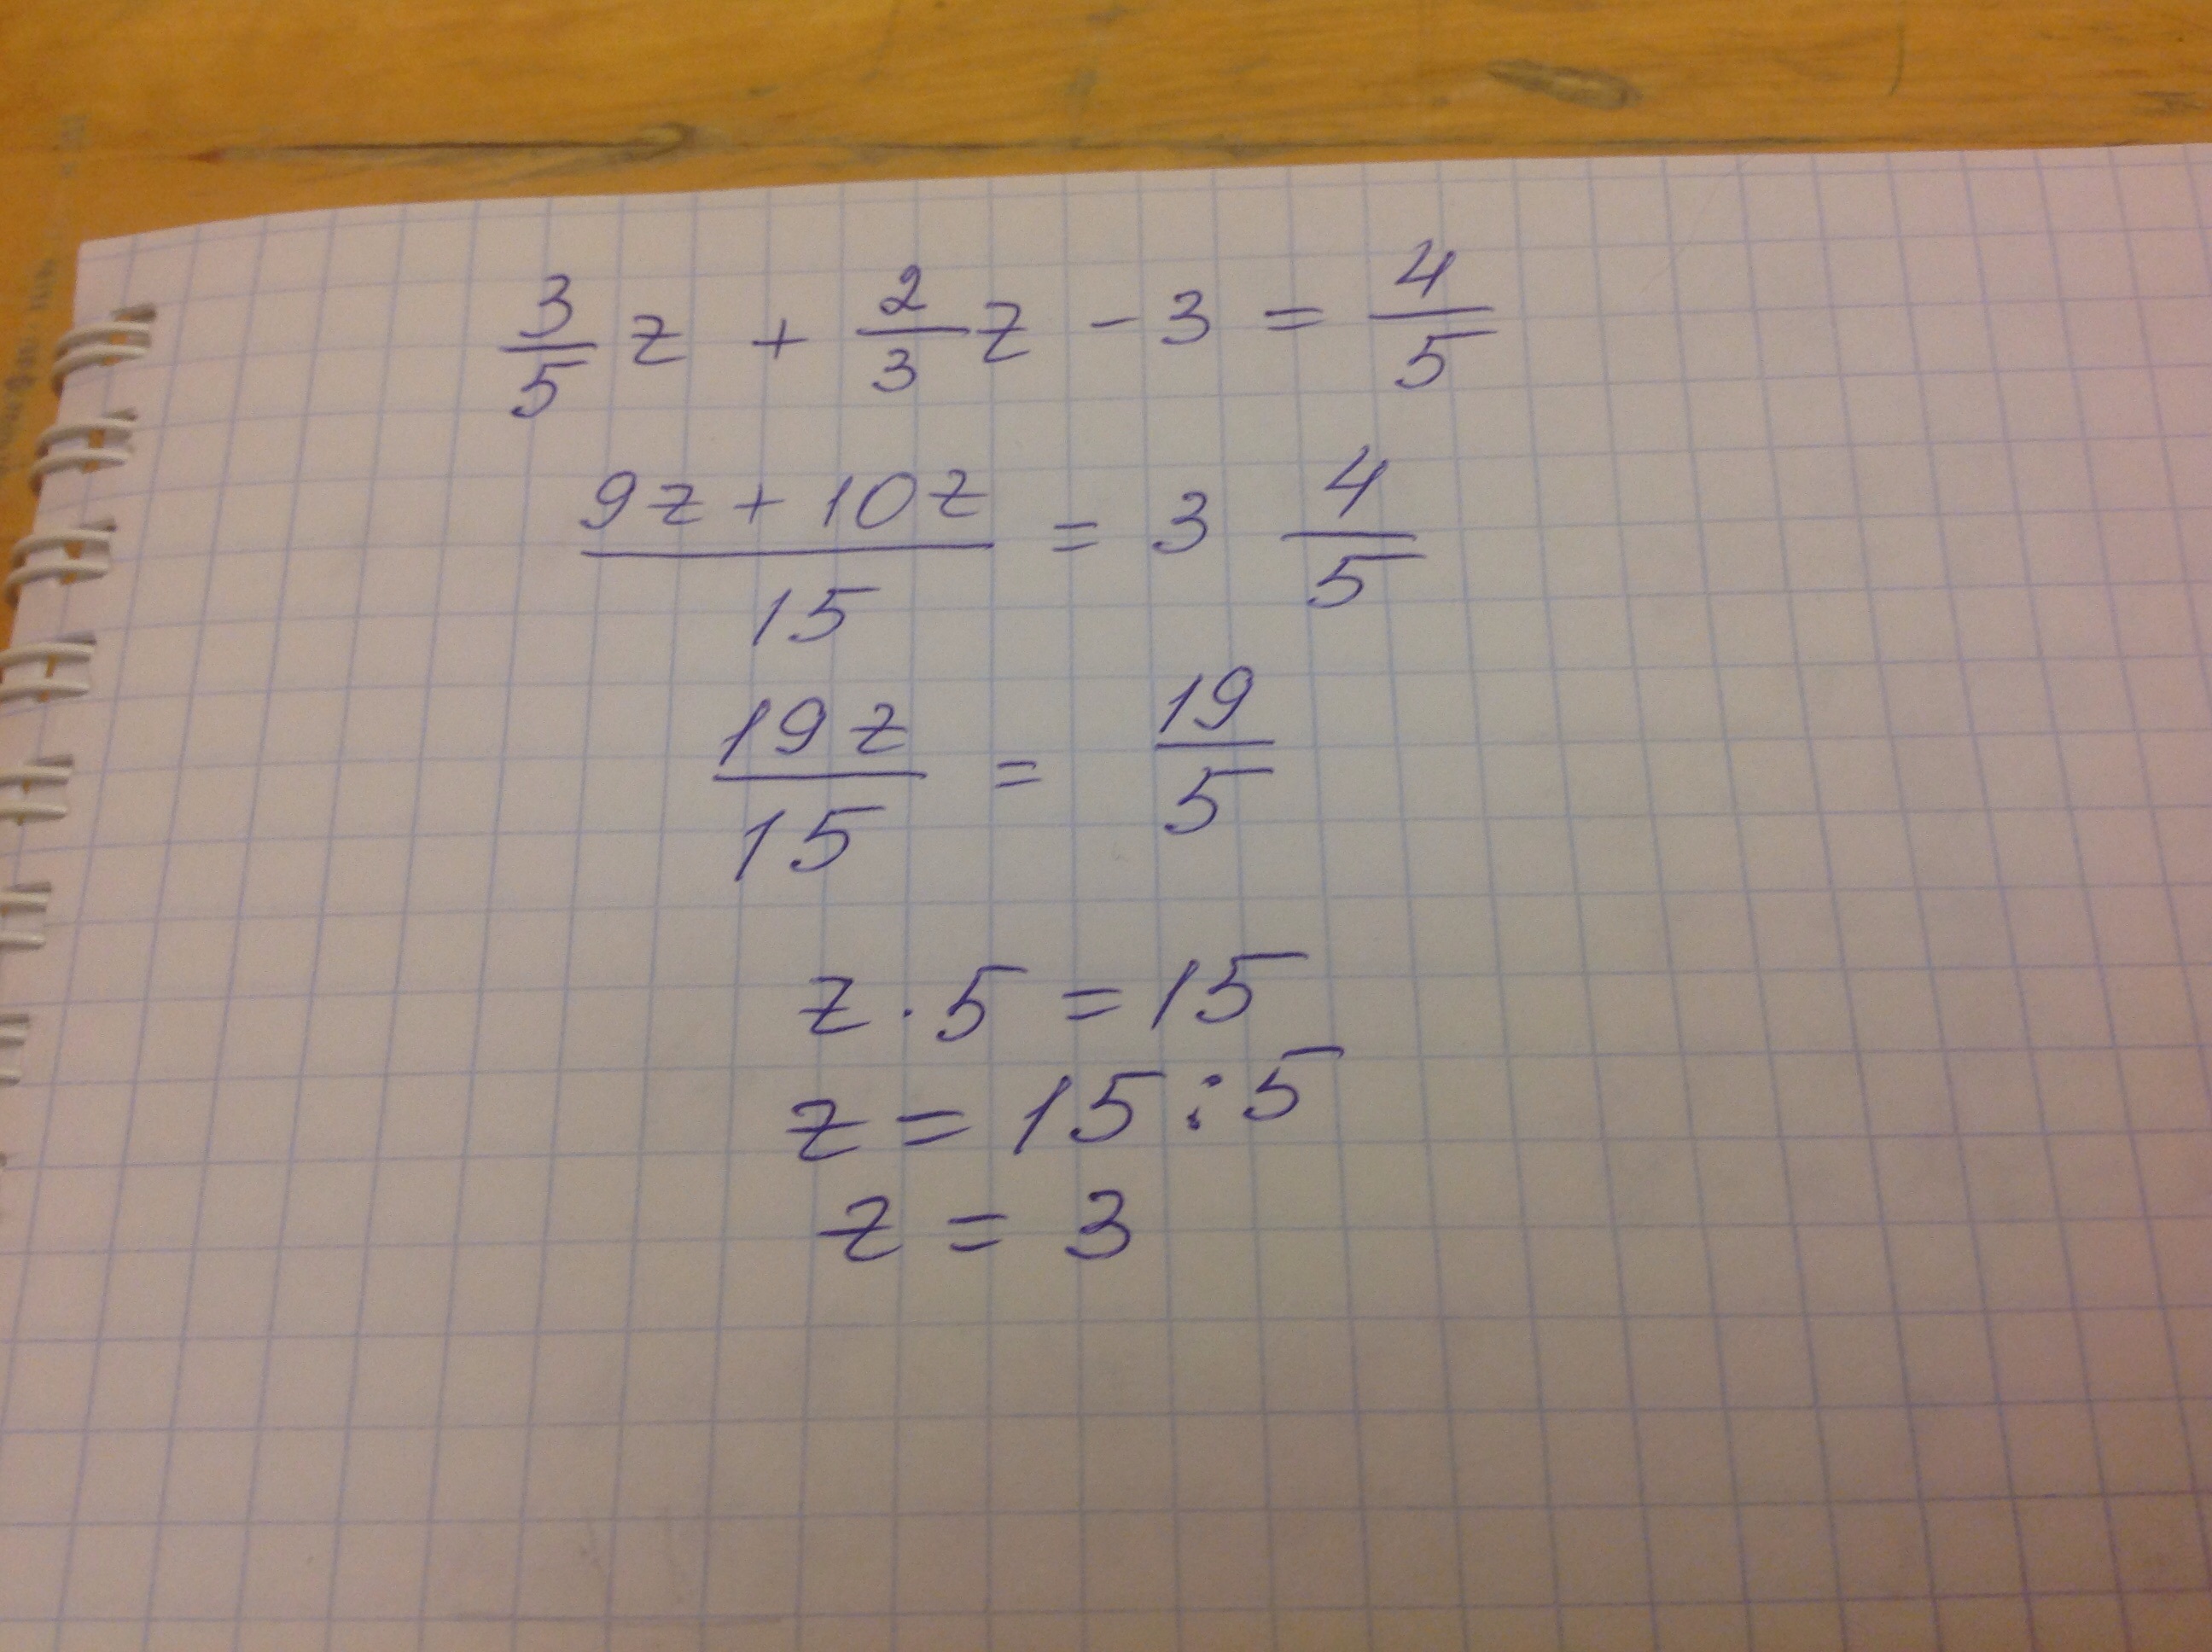 7 z 3 z 5 12. Решение уравнения 2 z - 3 - 5. 3/5z+2/3z-3 4/5. Z-3 решите уравнение. Решить уравнение 2z^2 +3z+4=0.